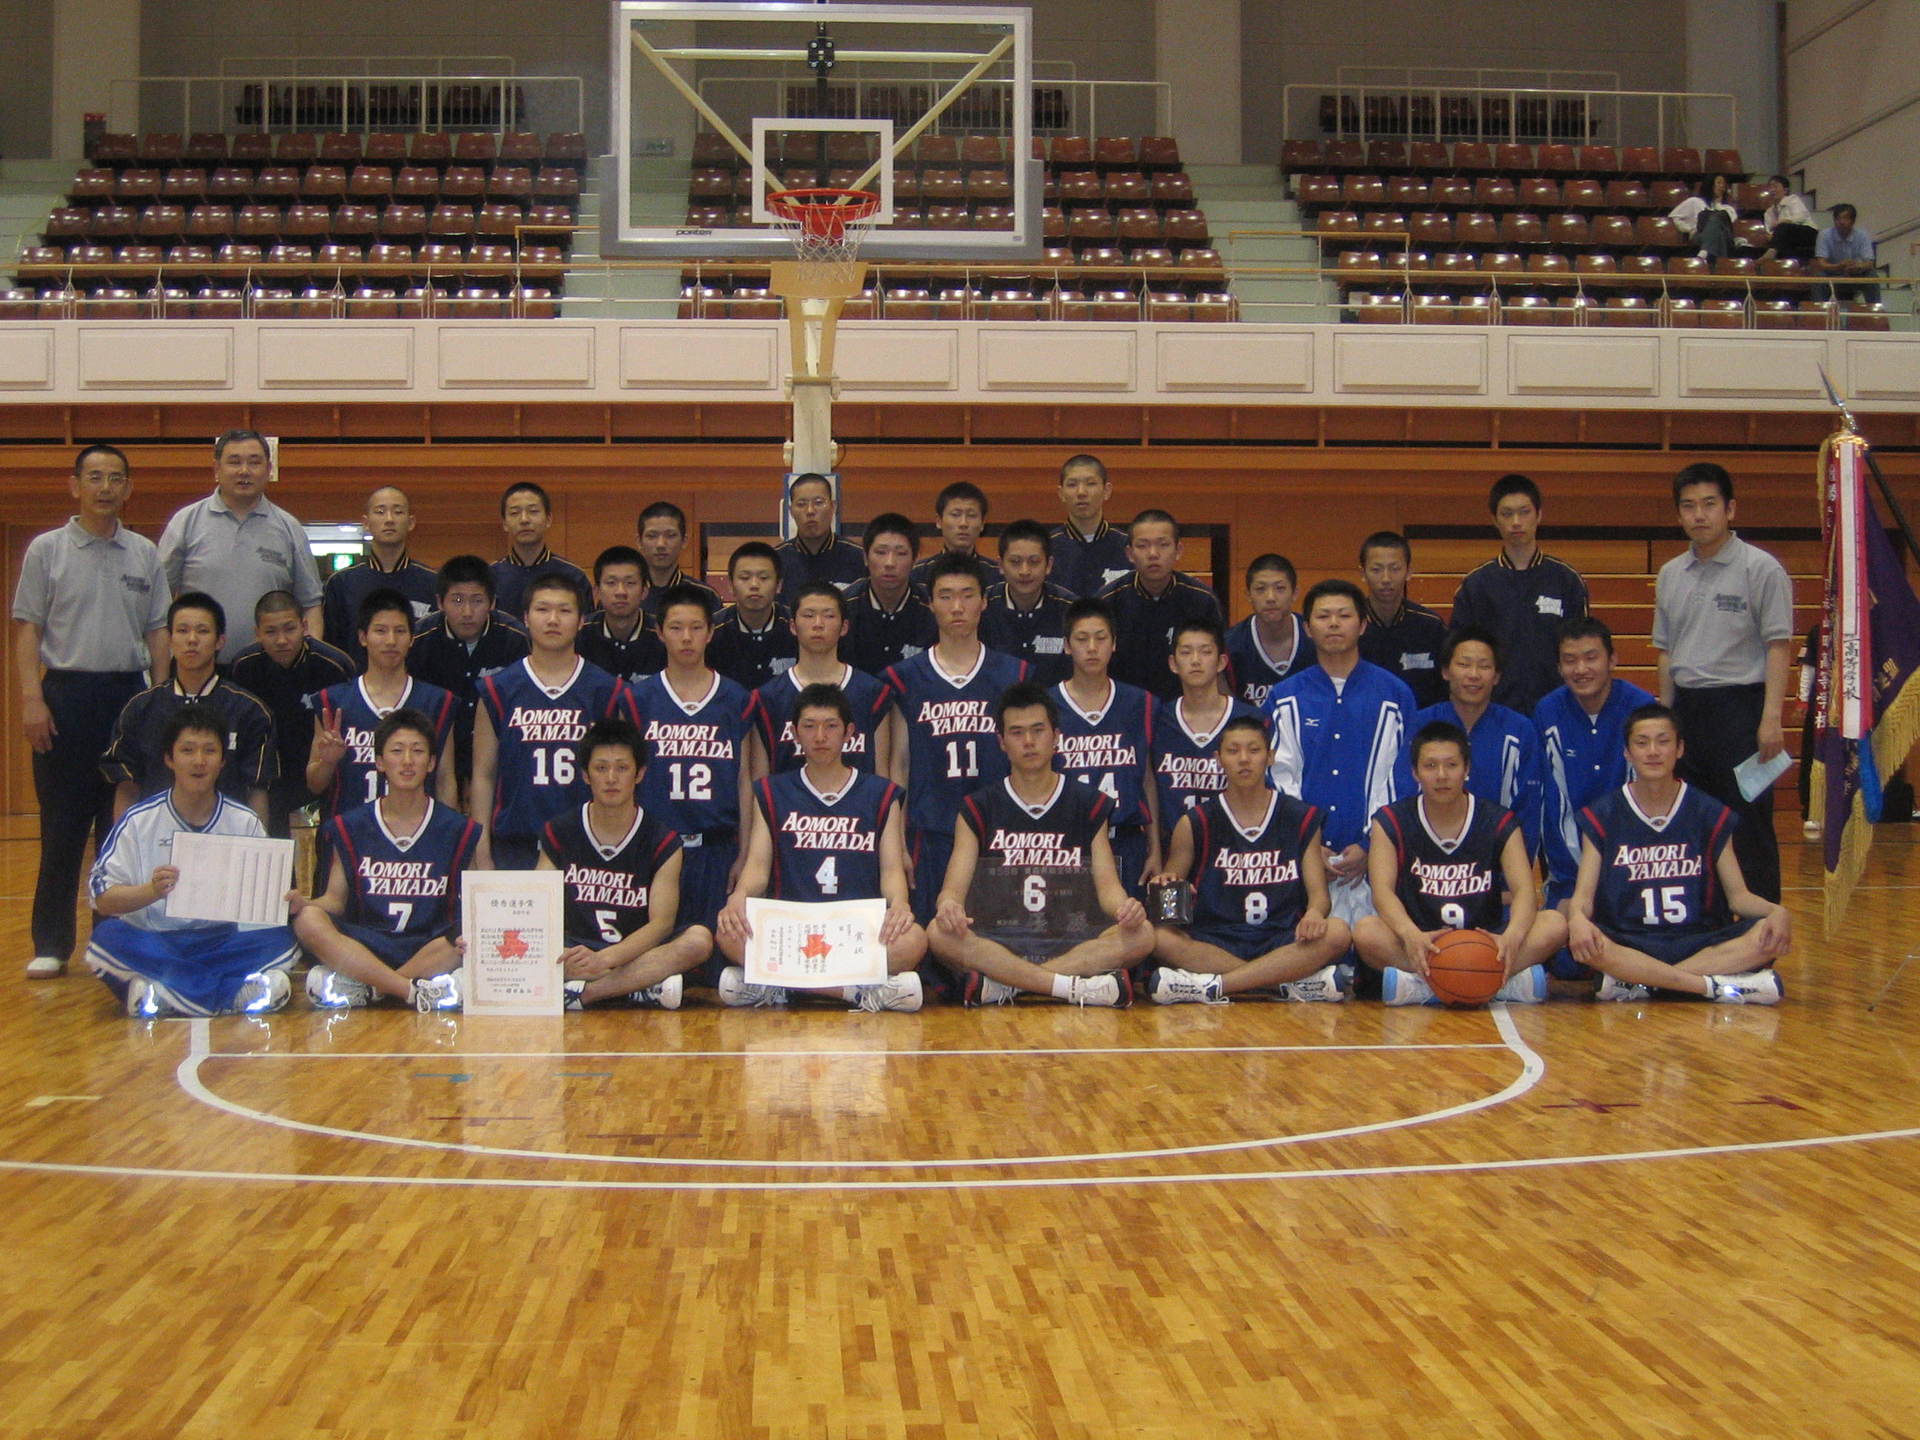 青森山田高校バスケットボール部 のブログ記事一覧 稲庭ブログ